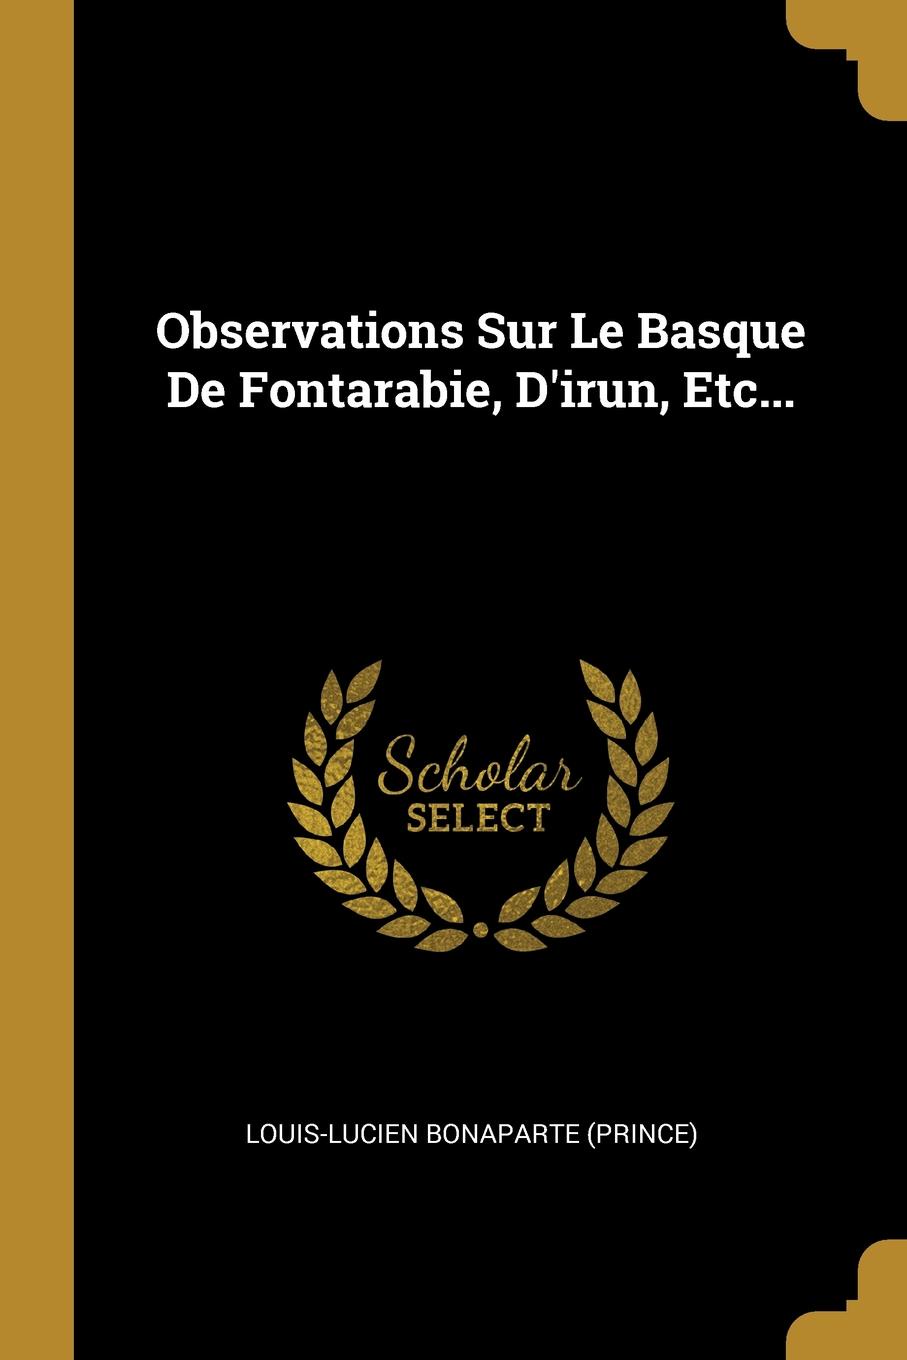 Observations Sur Le Basque De Fontarabie, D.irun, Etc...